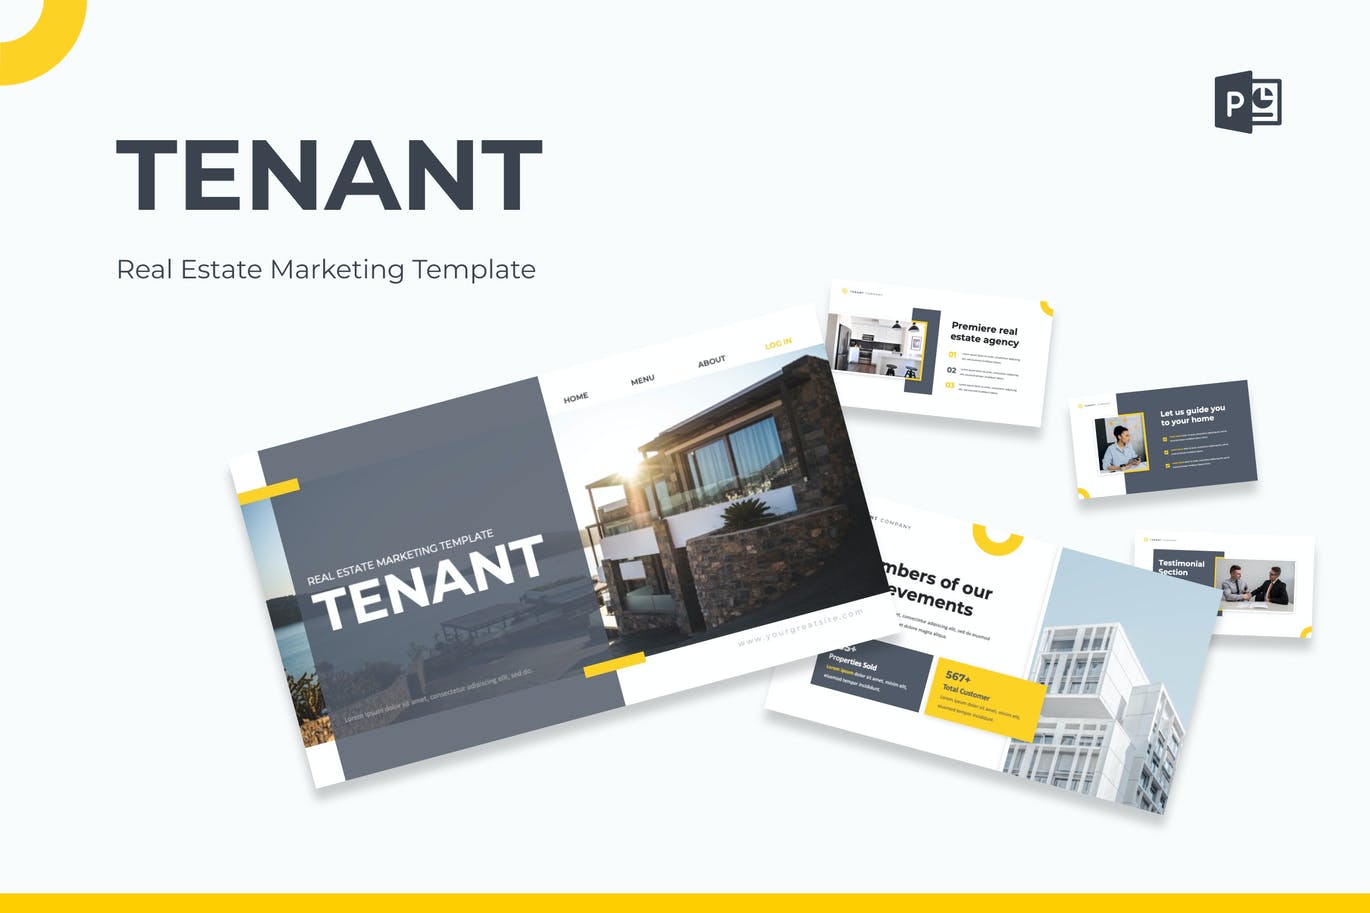 房地产营销PPT设计模板 Tenant – Real Estate Marketing Powerpoint 幻灯图表 第1张